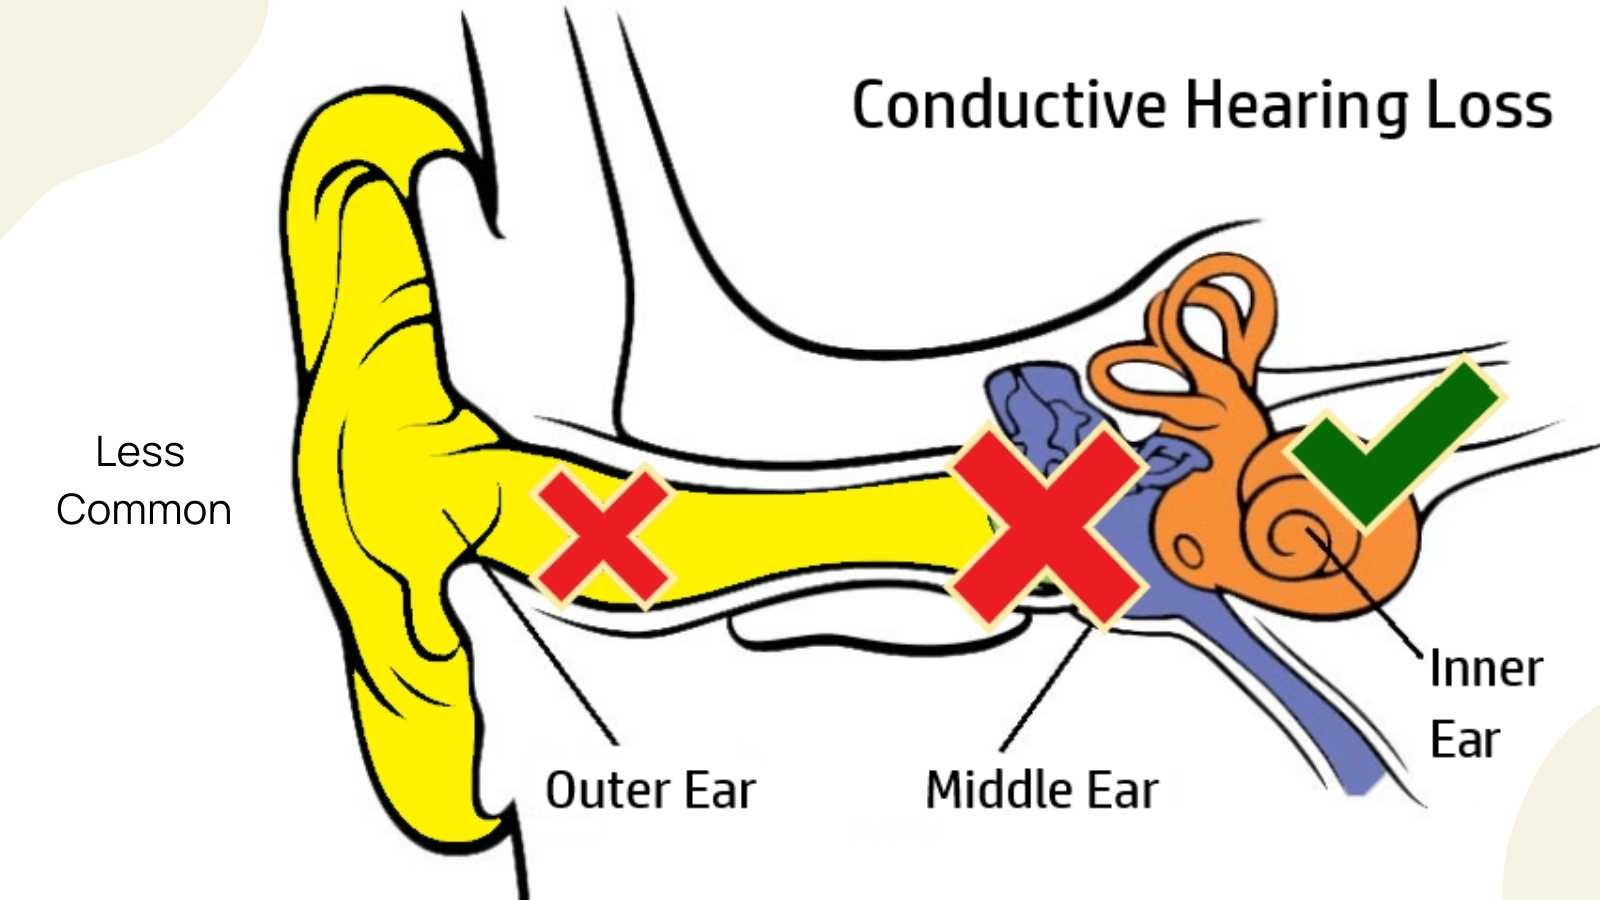 Image of conductive hearing loss